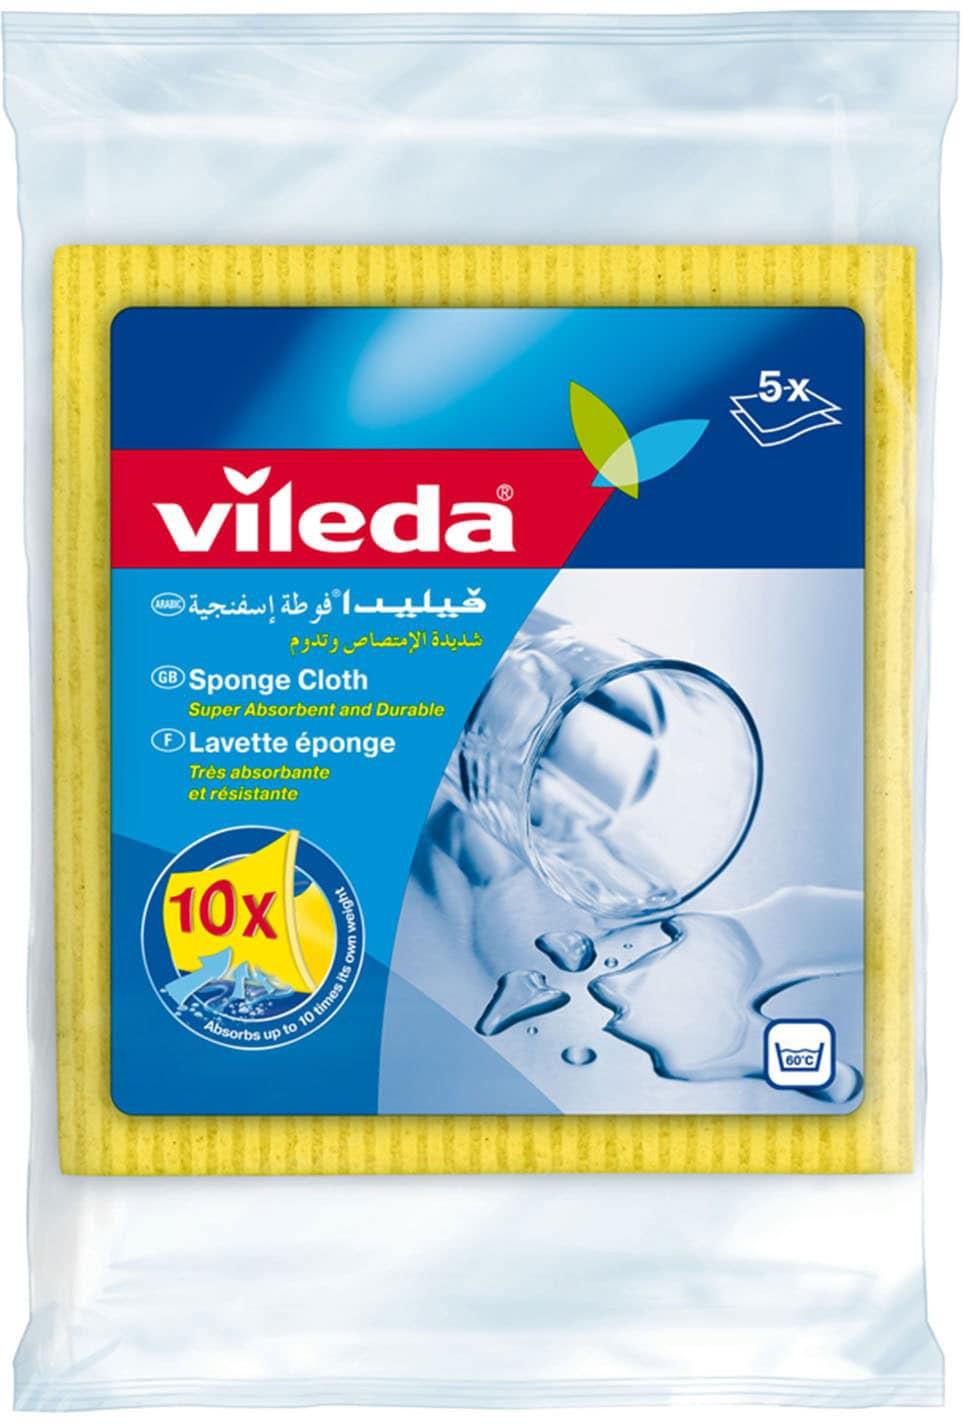 Vileda sponge cloth / cleaning cloth 5 pieces